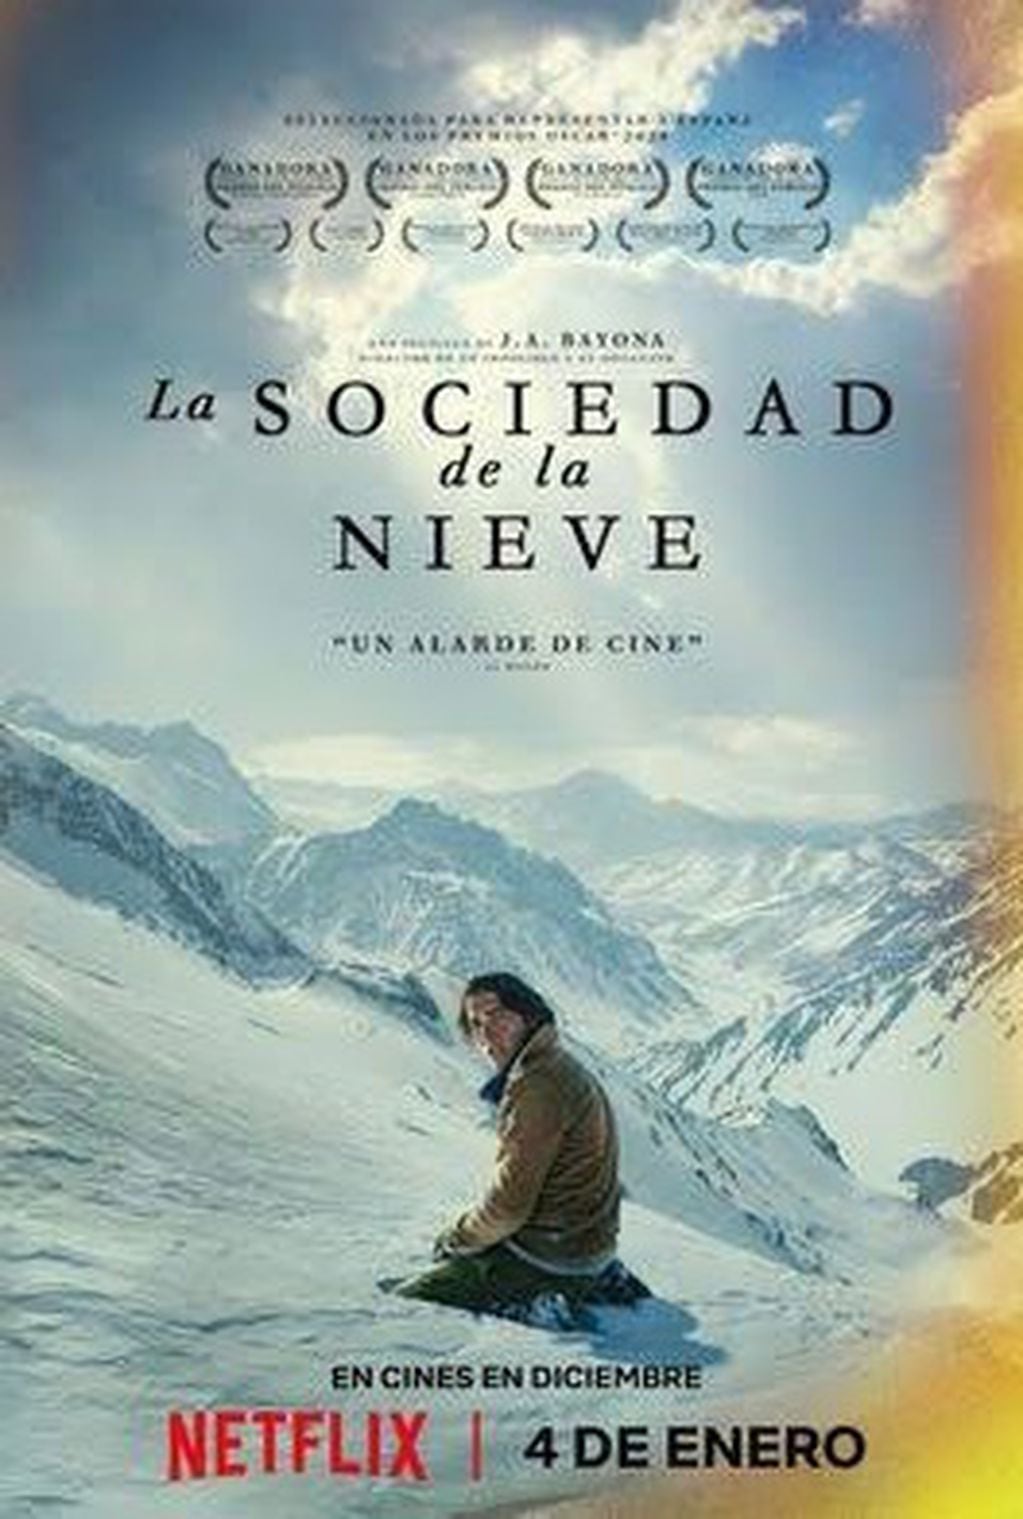 "La sociedad de la nieve", dirigida por J.A. Bayona, tiene a los hermanos mendocinos Alejandro y Ezequiel Fadel como protagonistas.